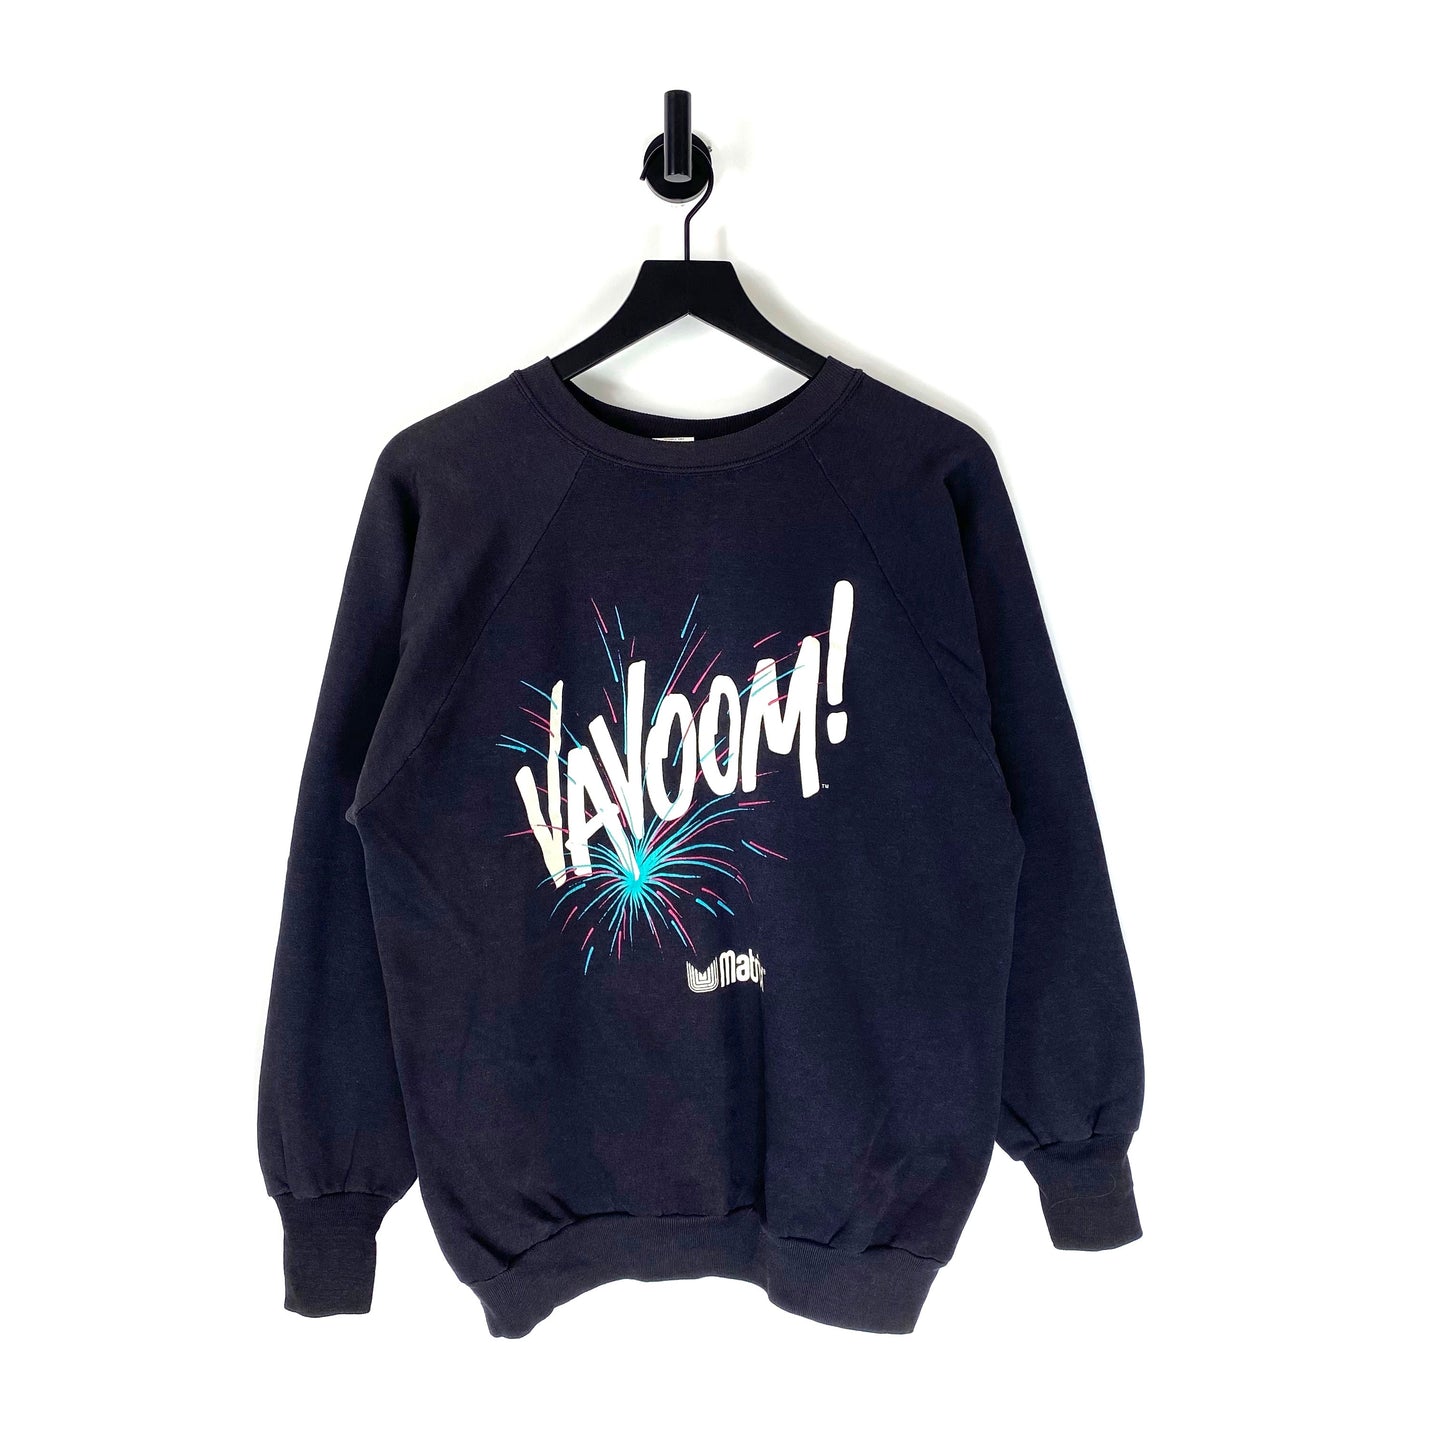 80s Vavoom Matrix Sweater - M/L